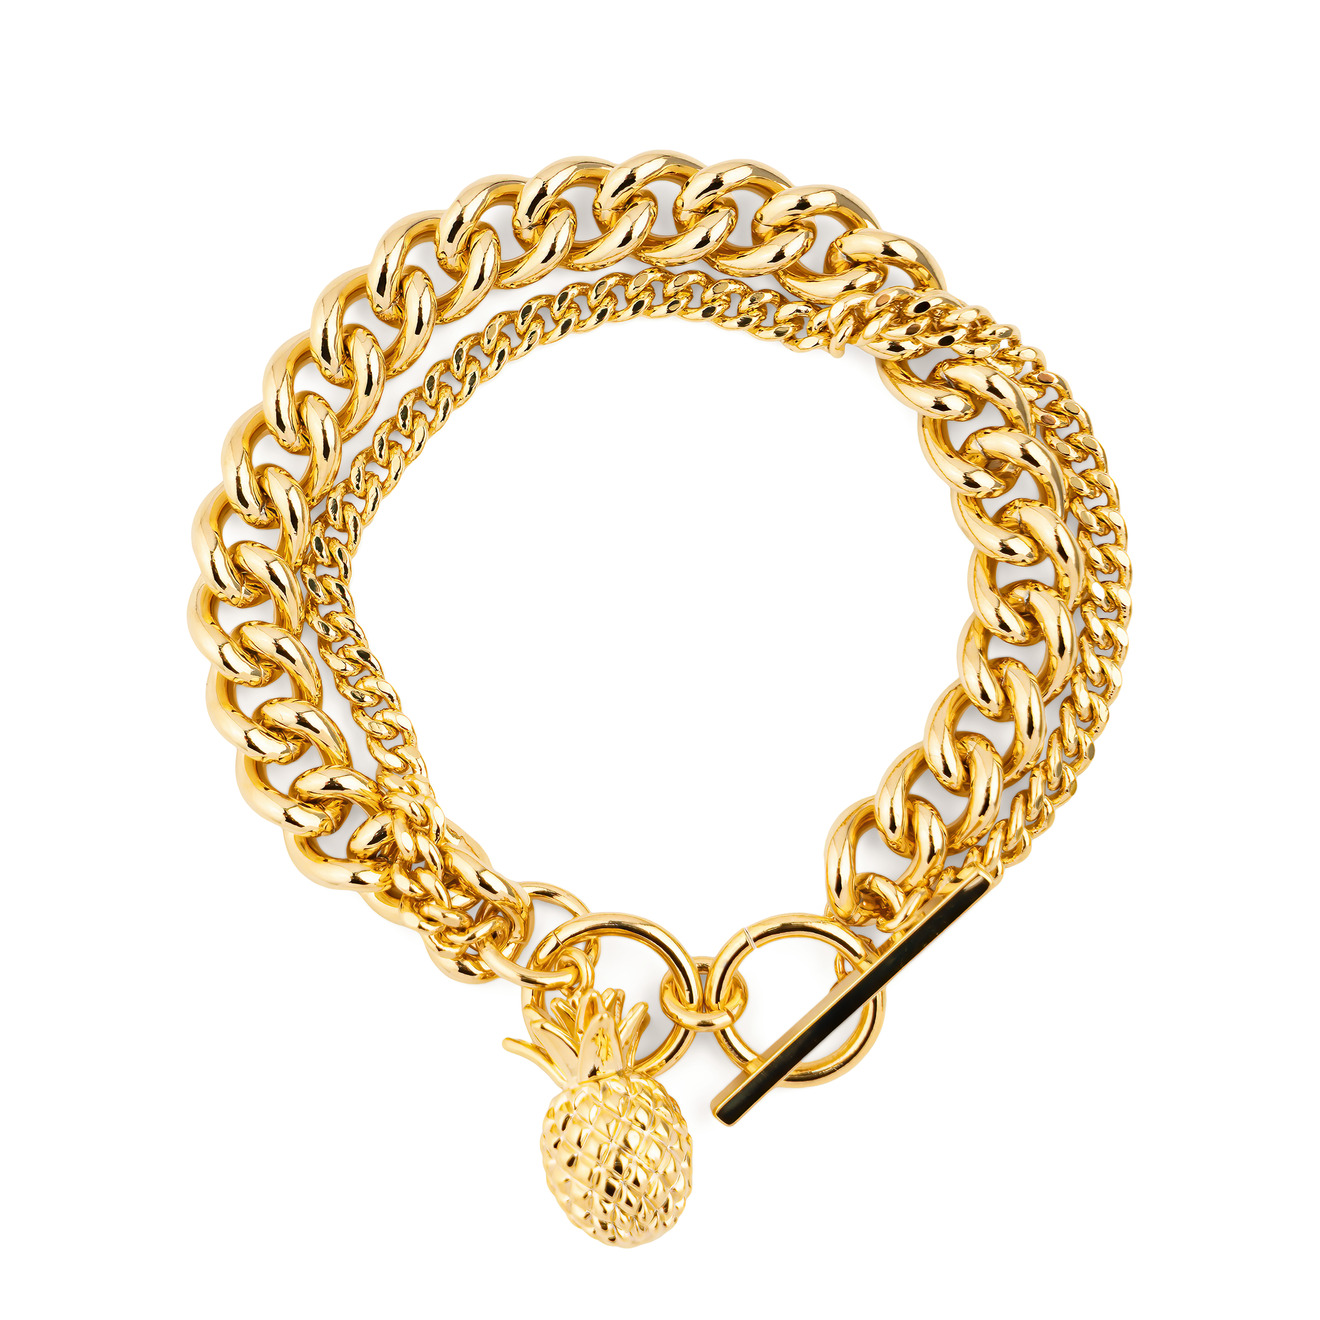 Free Form Jewelry Двойной золотистый браслет с ананасом free form jewelry золотистое колье цепь с ананасом